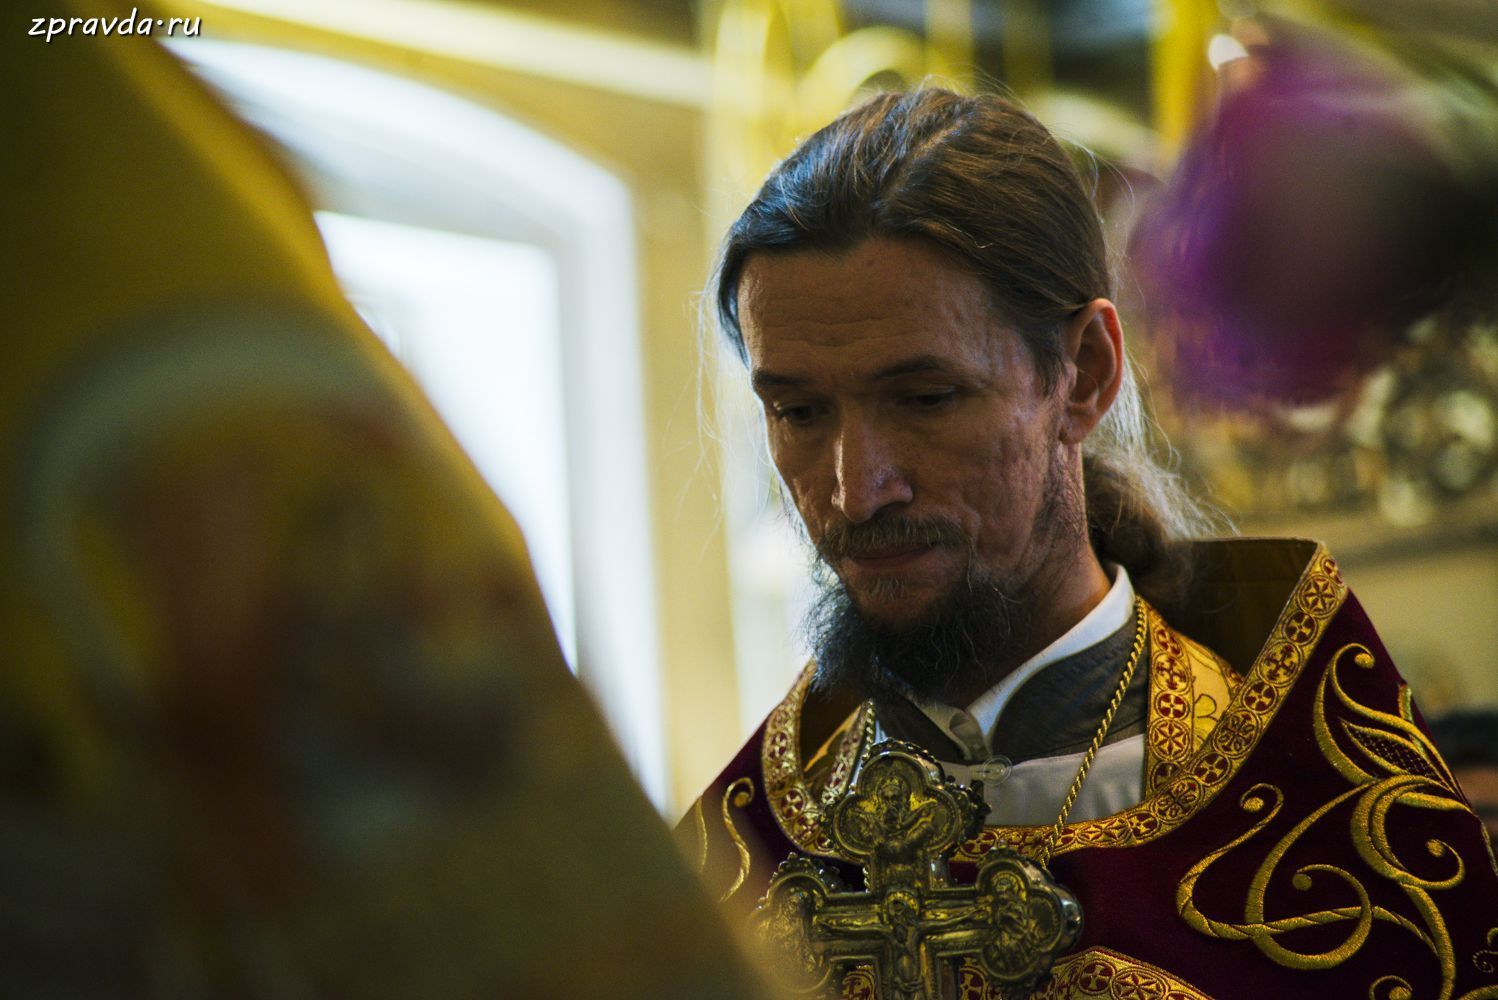 Протоиерей Святослав: «Коронавирус не омрачит праздник Пасхи». Помните легенду о кольце царя Соломона - «Пройдёт и это!»